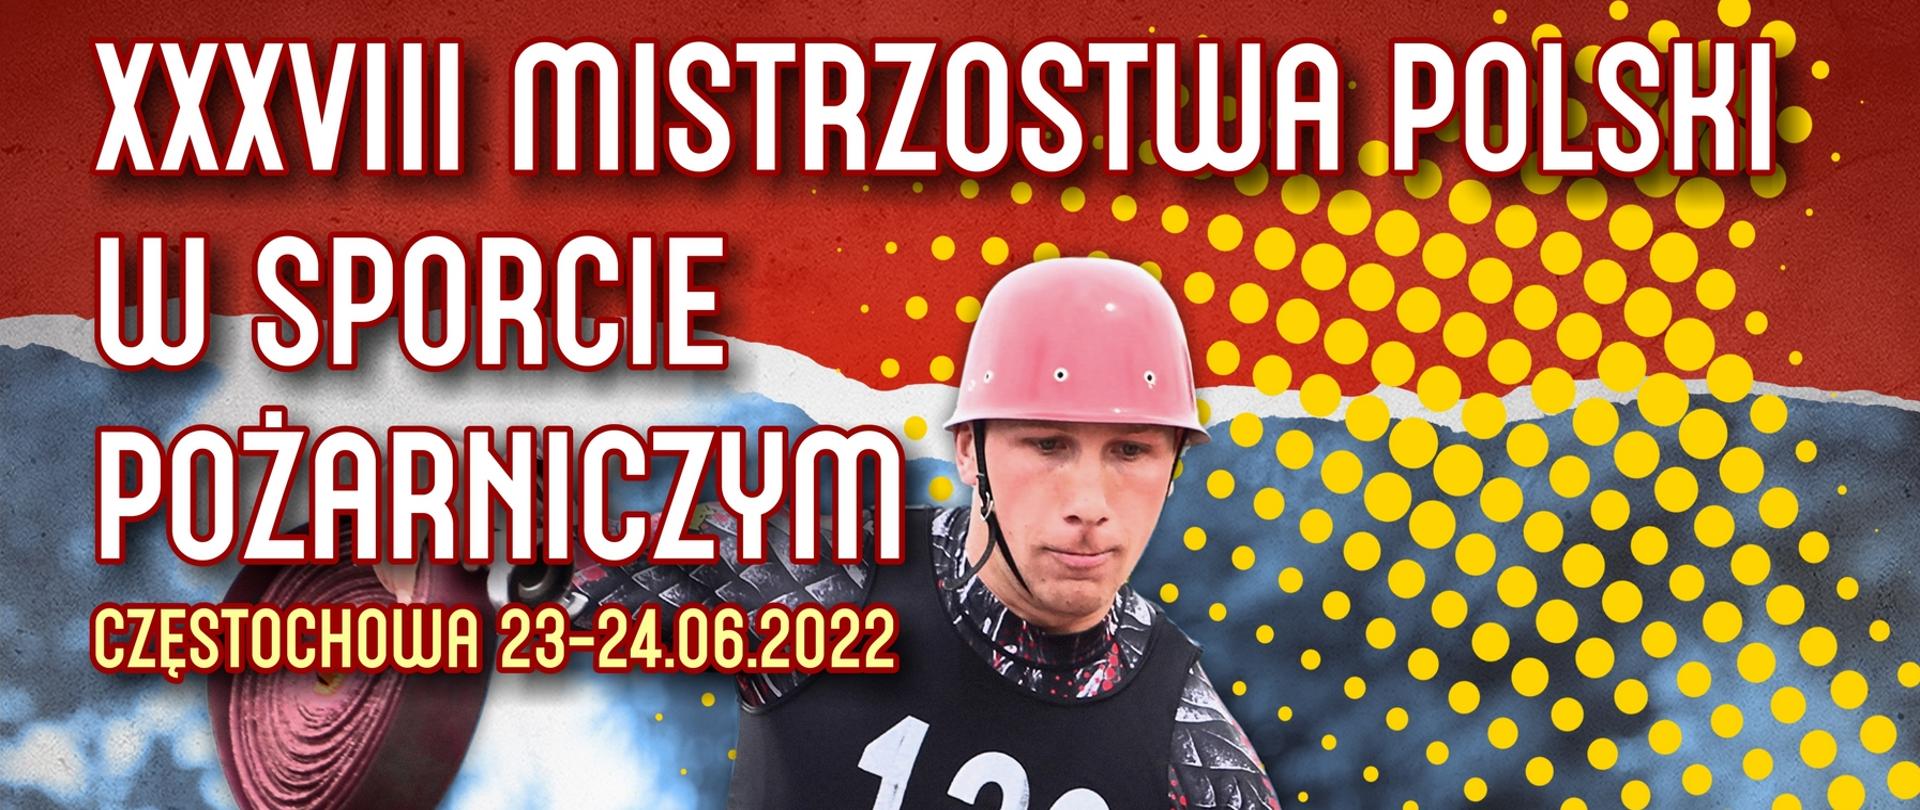 Na zdjęciu widać plakat informacyjny na temat XXXVIII Mistrzostw Polski w Sporcie Pożarniczym. W centralnym miejscu zdjęcia widać sportowca, który biegnie i trzyma dwa węże pożarnicze.